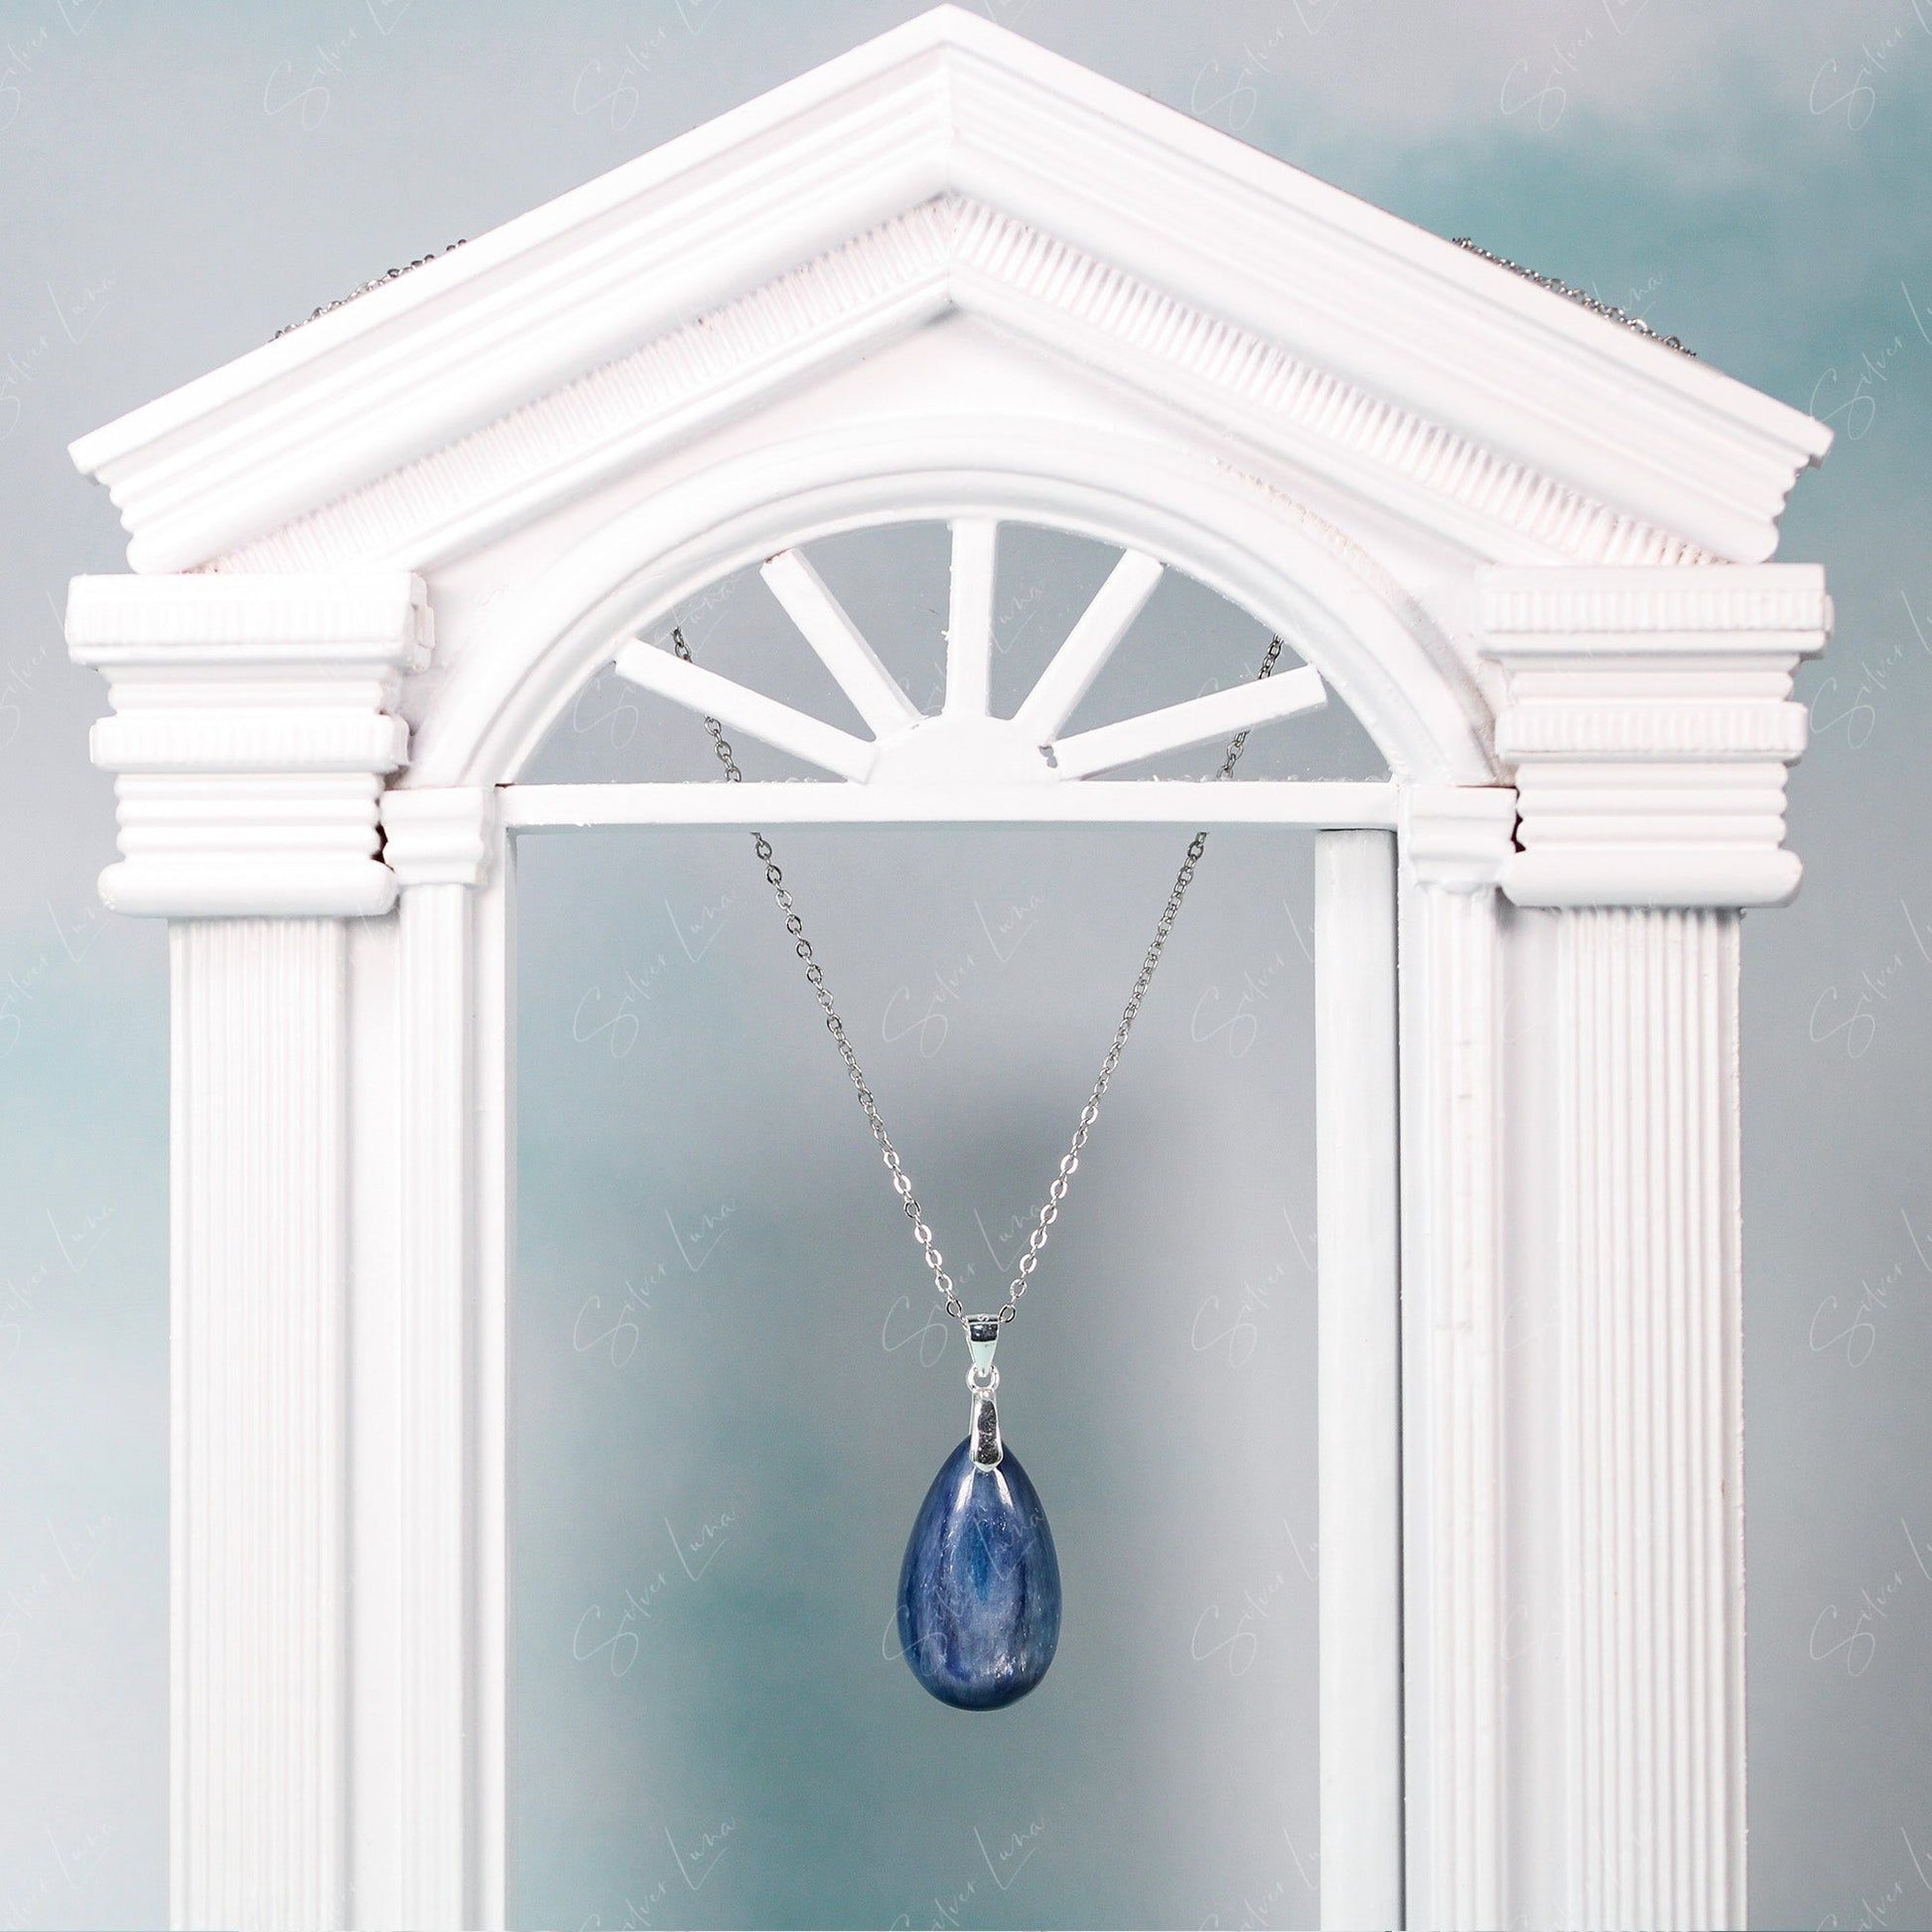 blue raindrop pendant necklace